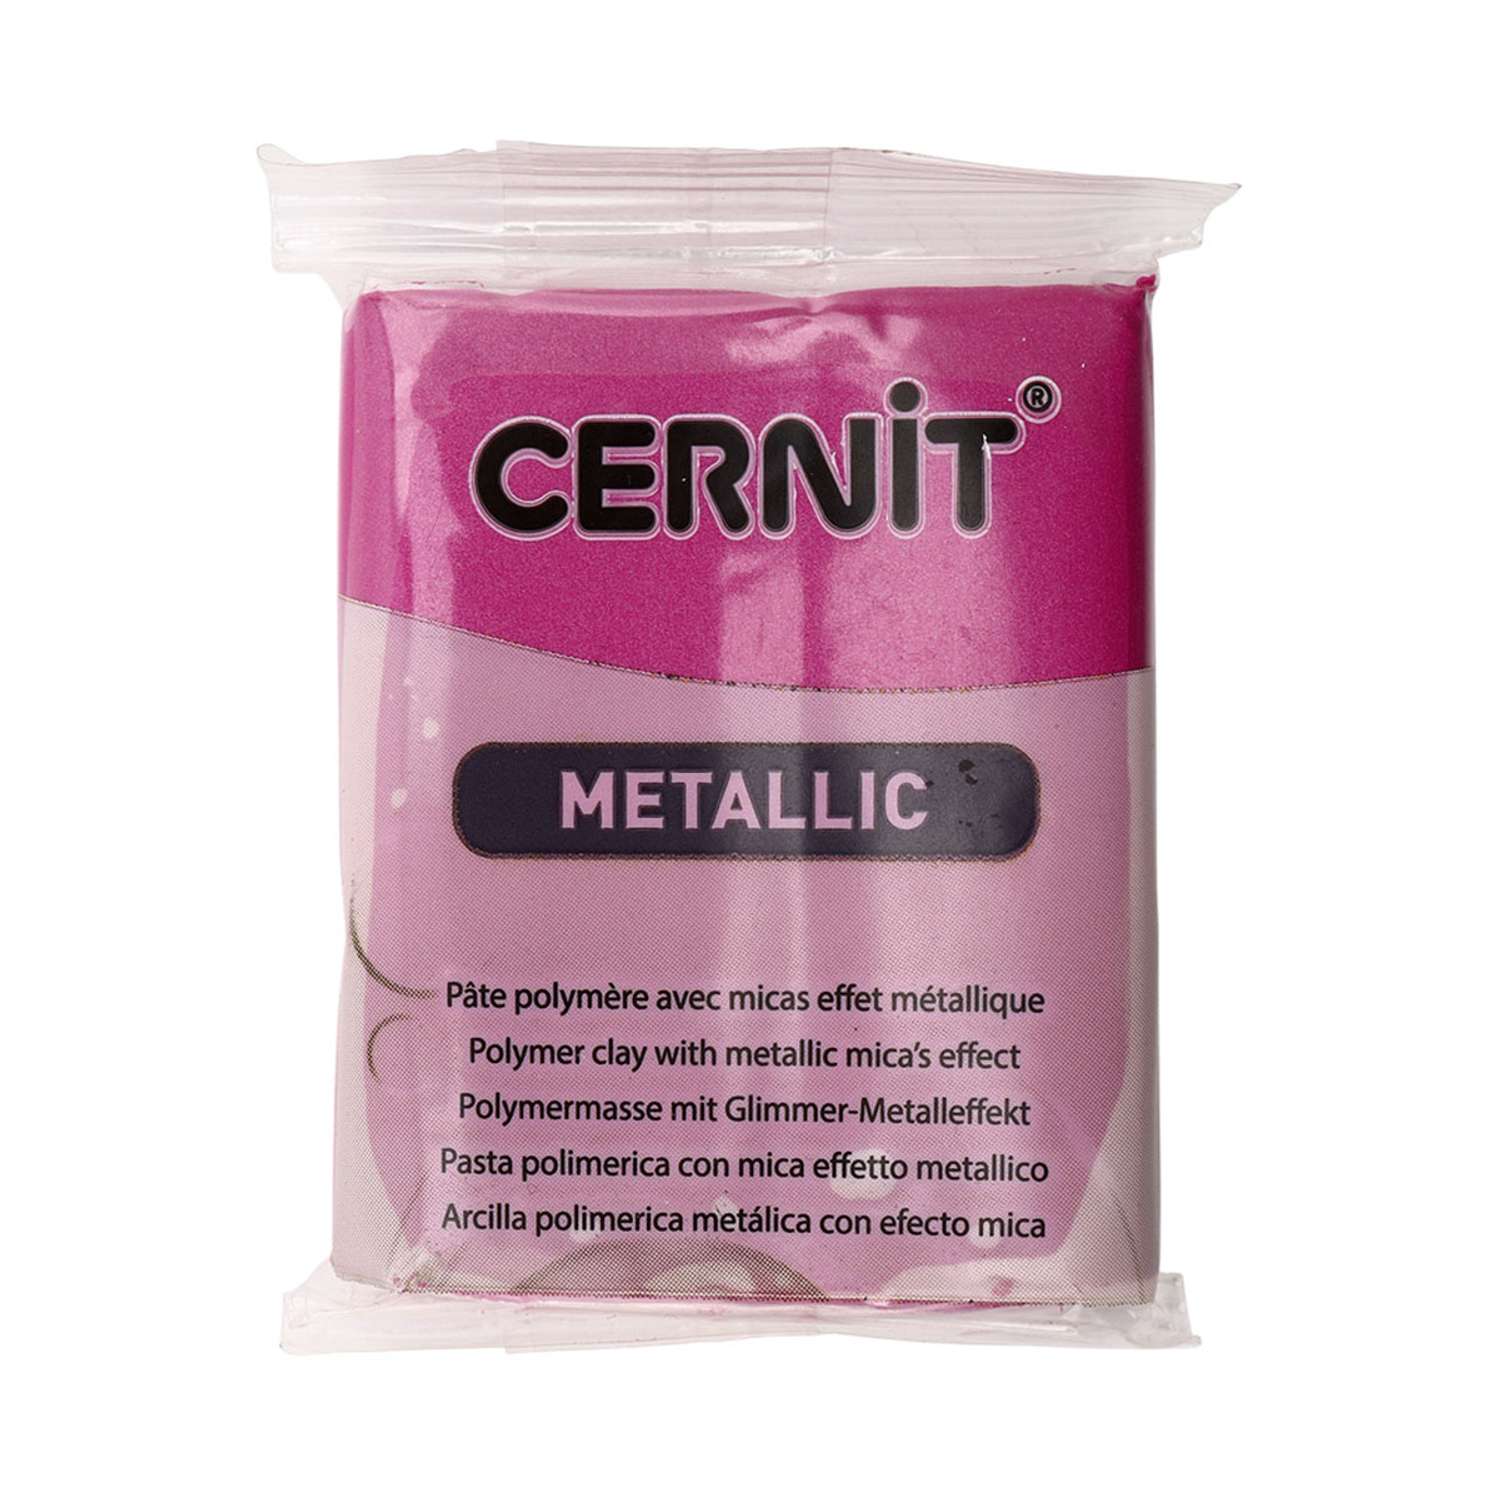 Полимерная глина Cernit пластика запекаемая Цернит metallic 56 гр CE0870072 - фото 7